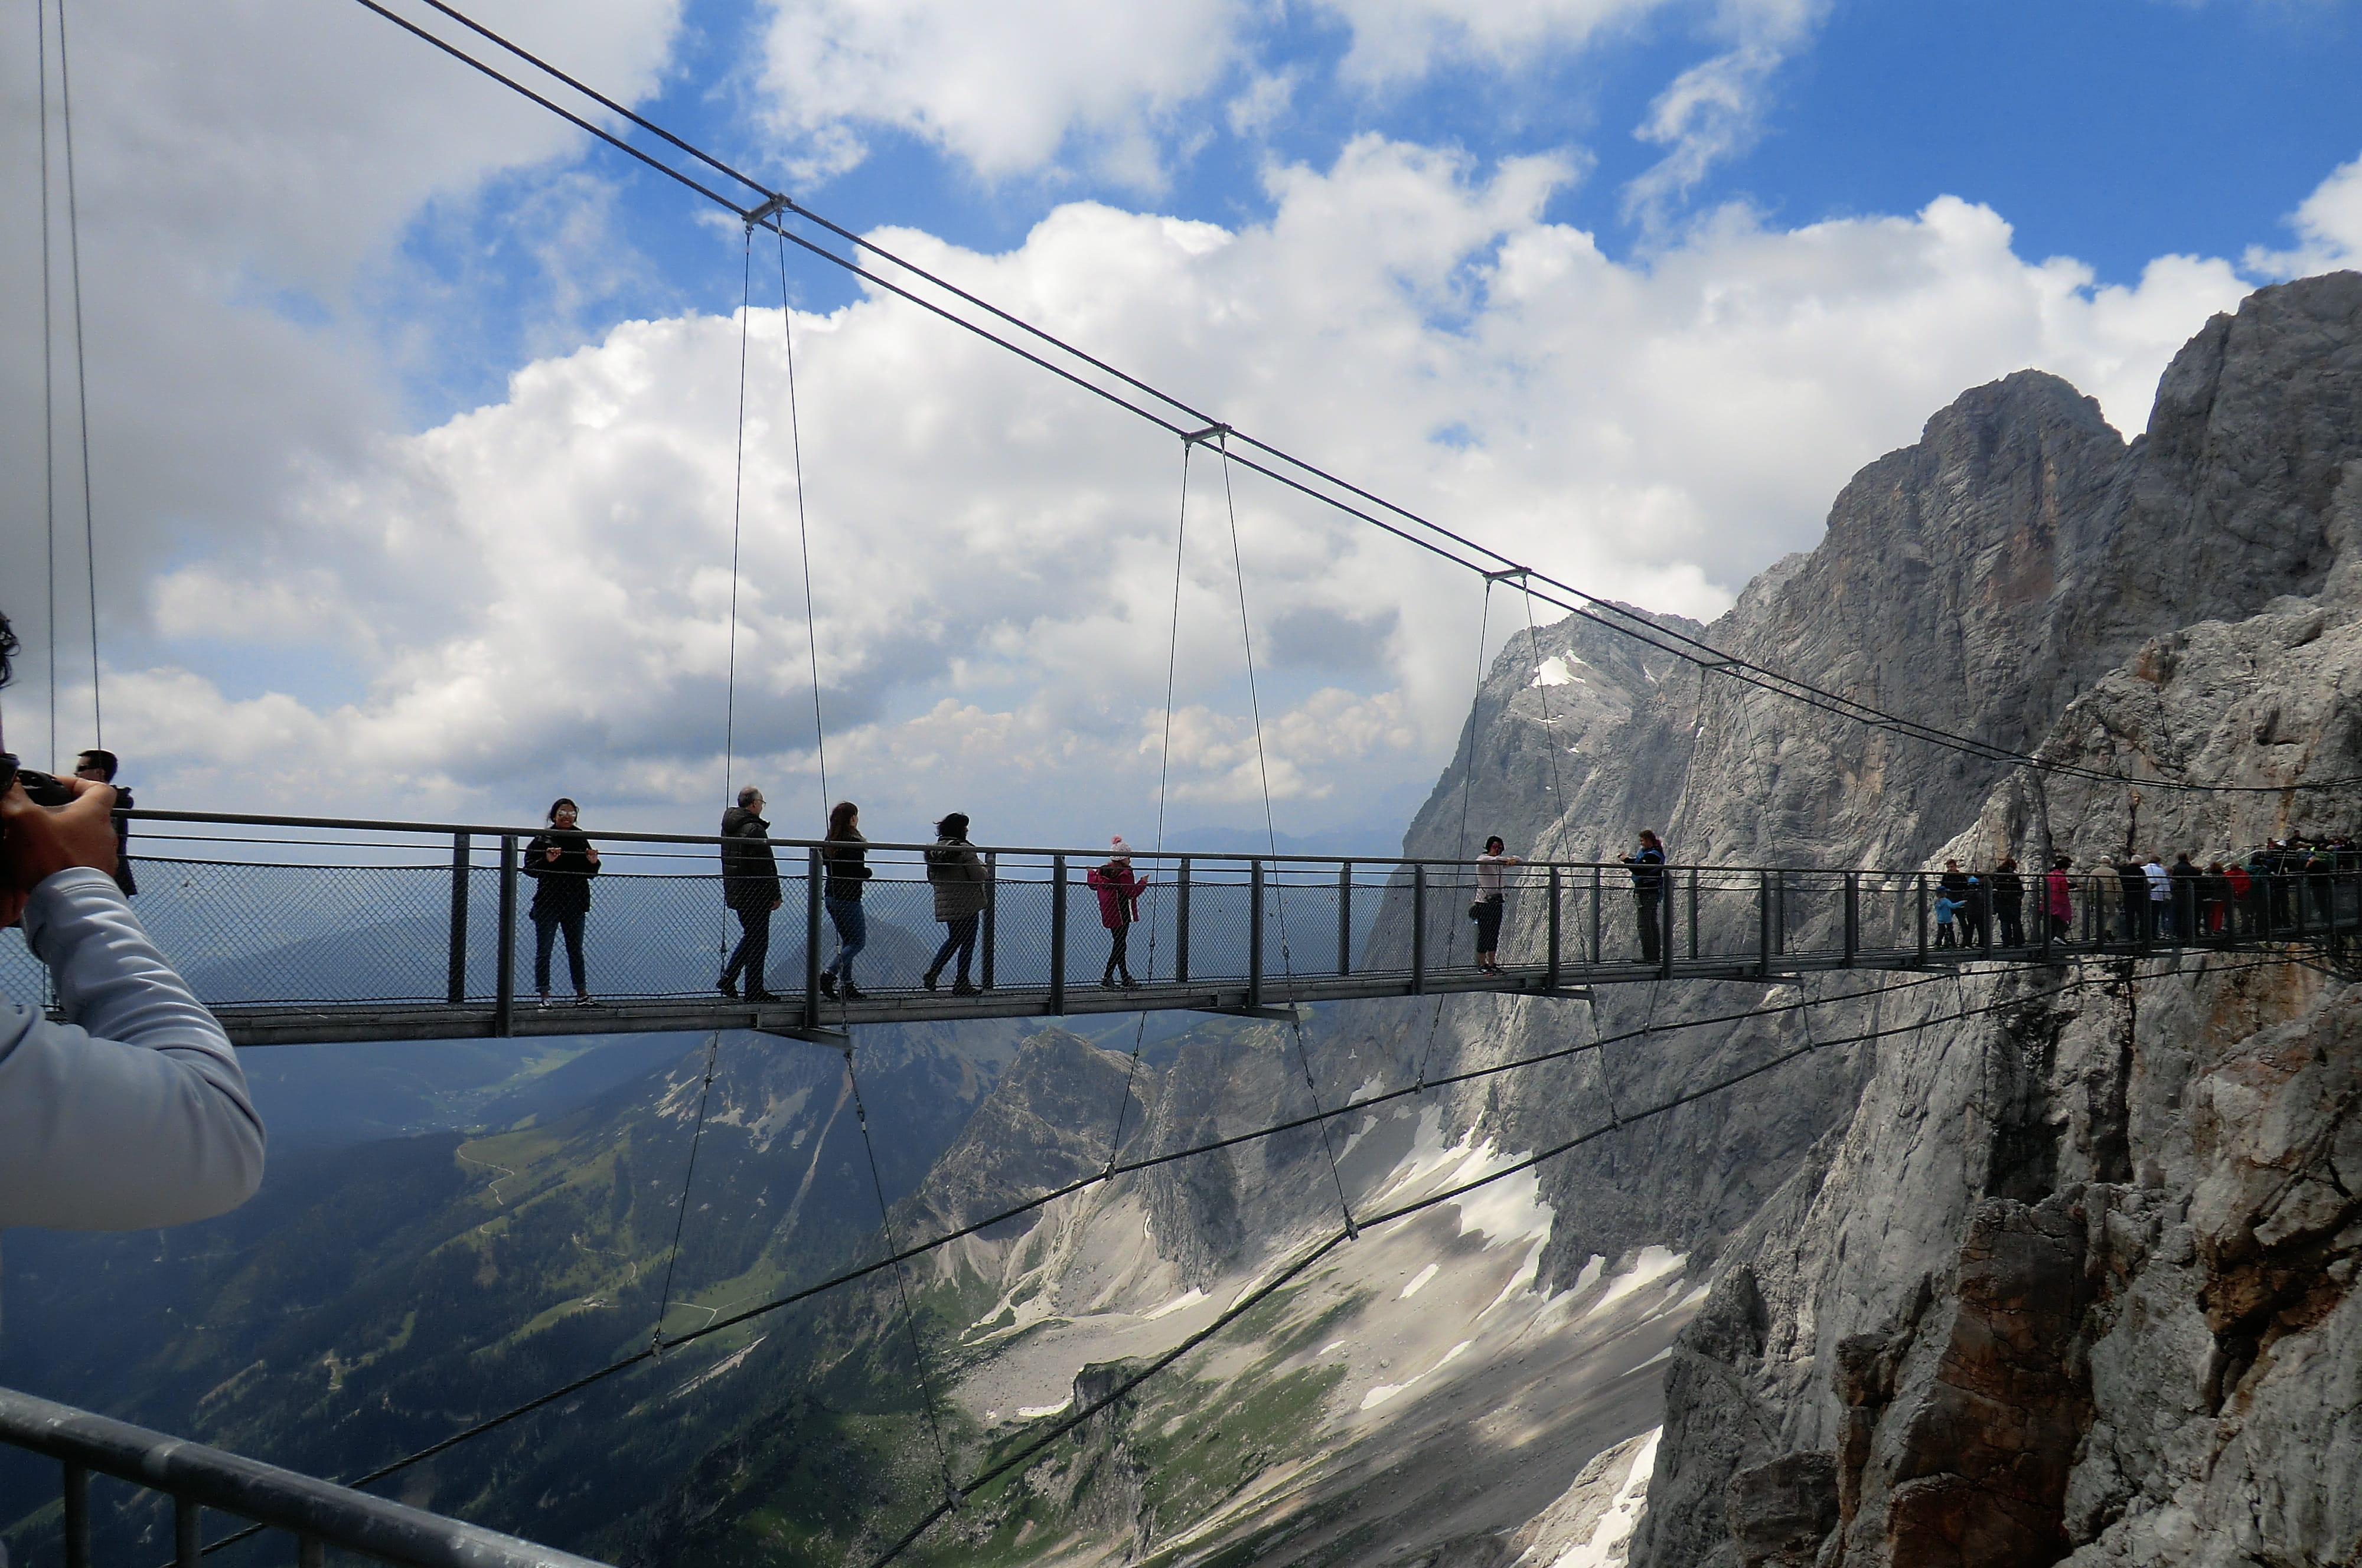 dachstein-hängebrücke, treppe-ins-nichts, mountains, austria